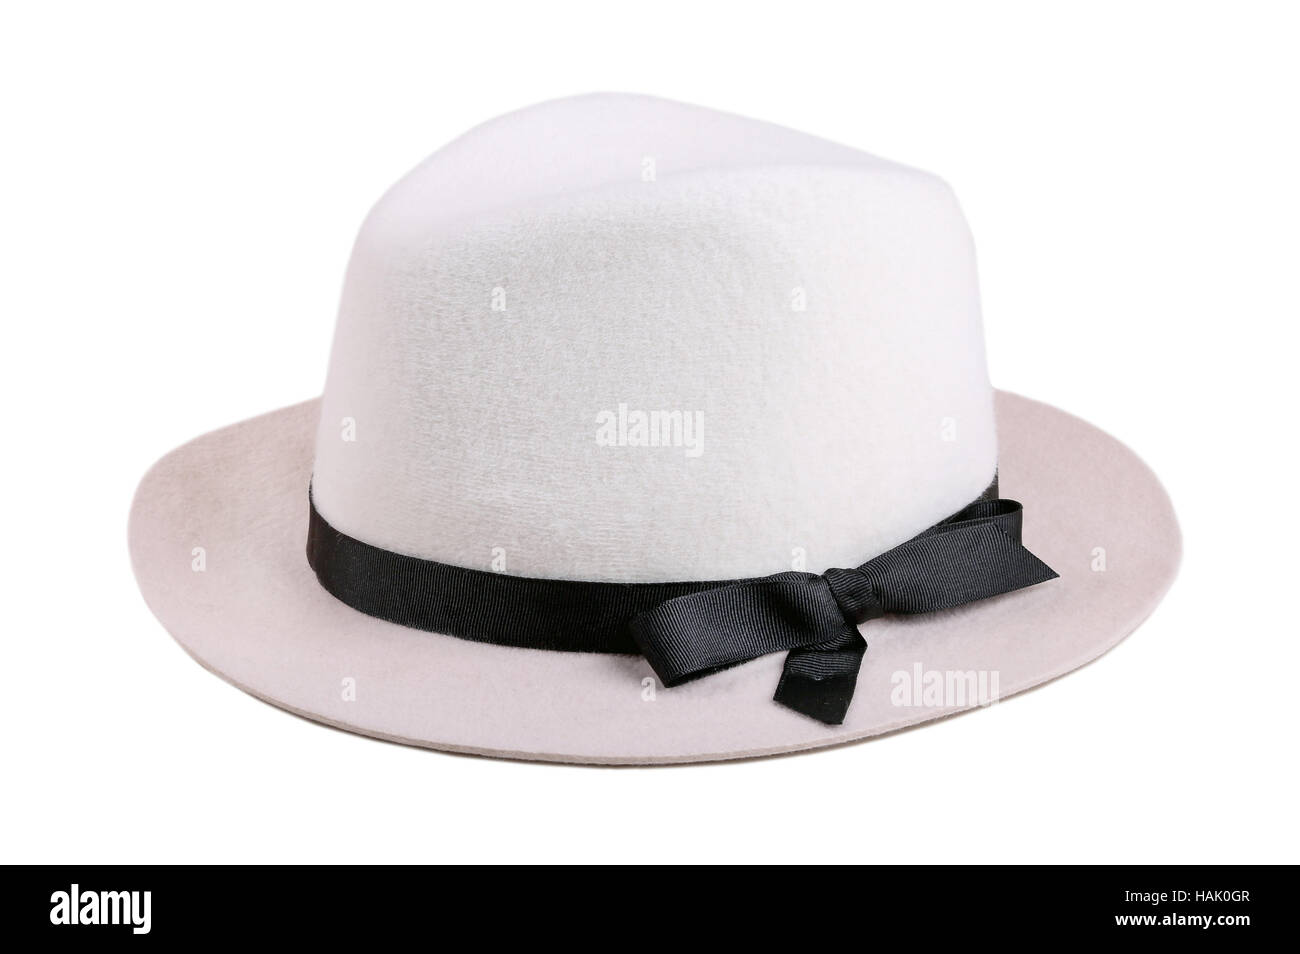 white felt hat with black ribbon isolated on white Stock Photo